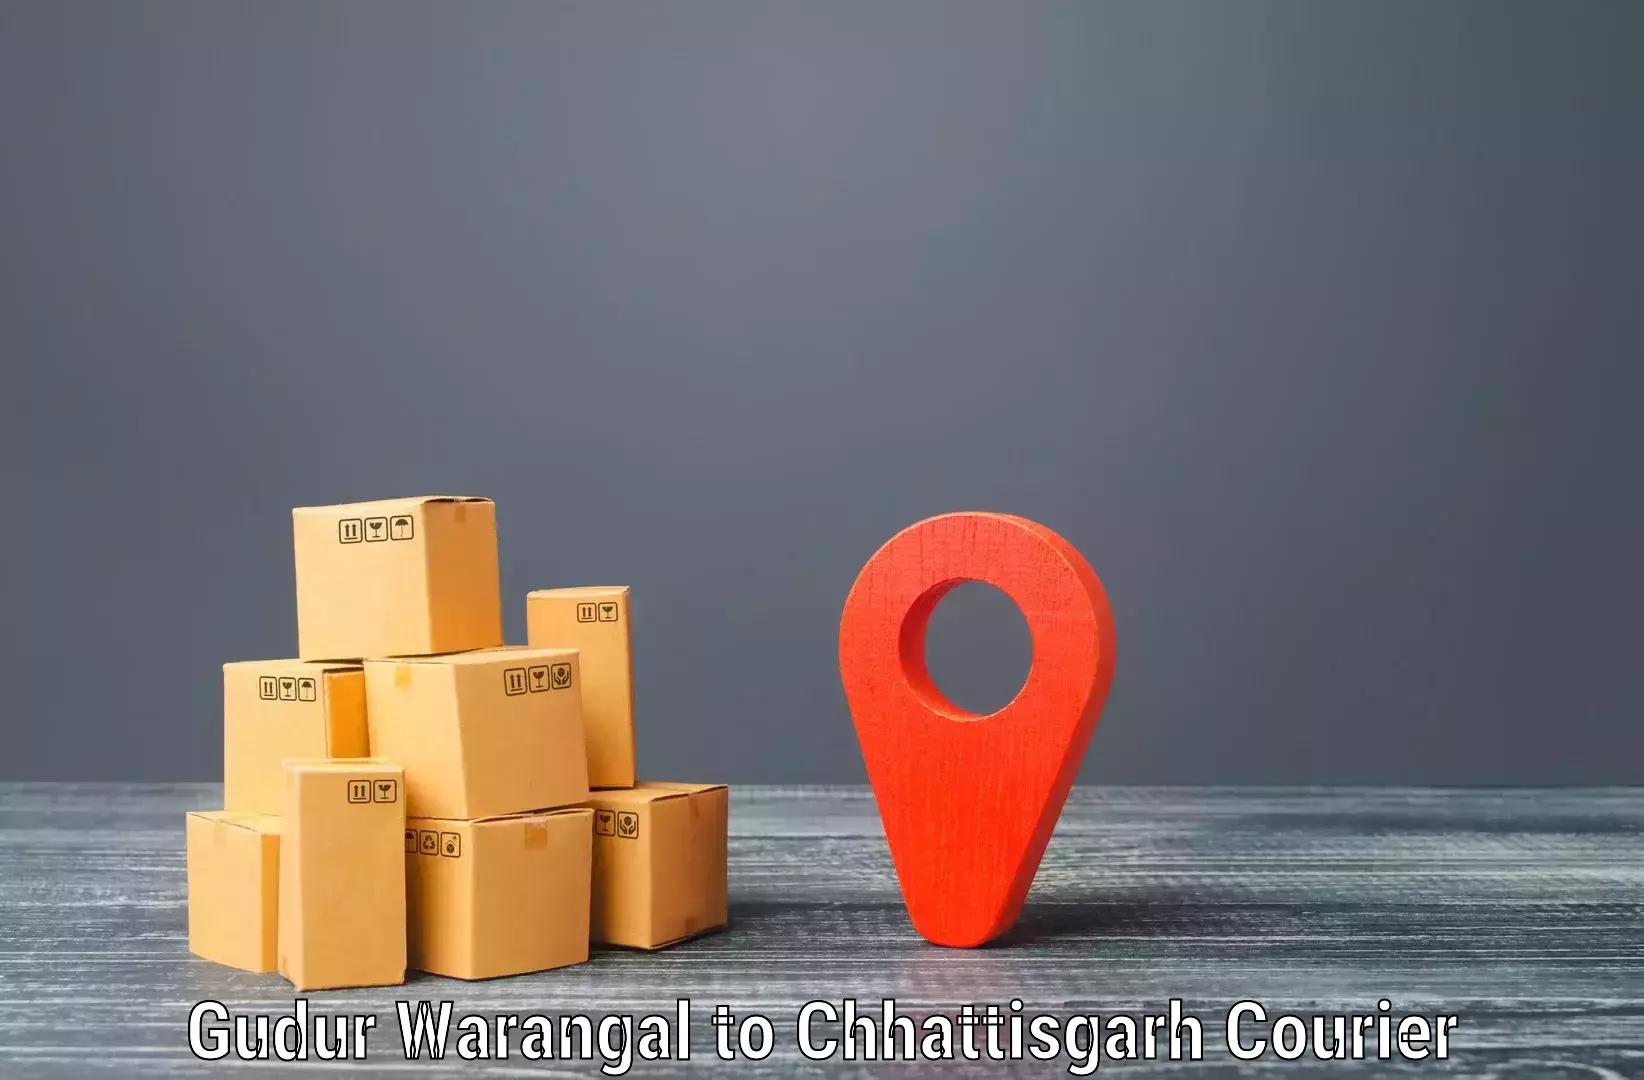 Speedy delivery service in Gudur Warangal to Surguja